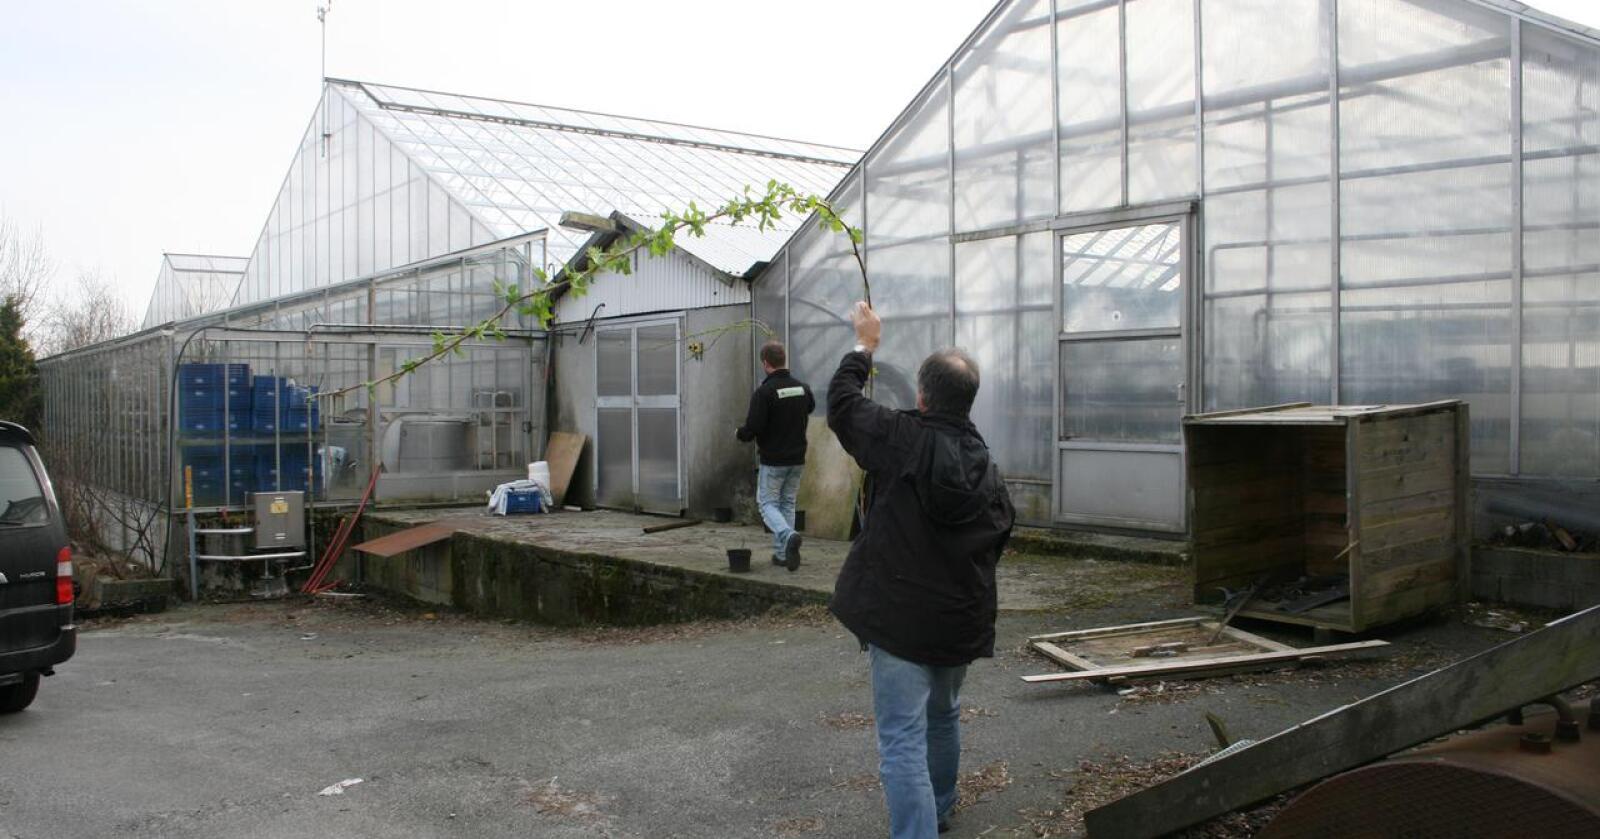 Høye priser gjør at gartnere i Rogaland bytter ut naturgass med propangass, til tross for et det er bygd ut eget rørsystem. Foto: Bjarne Bakkeheien Aase